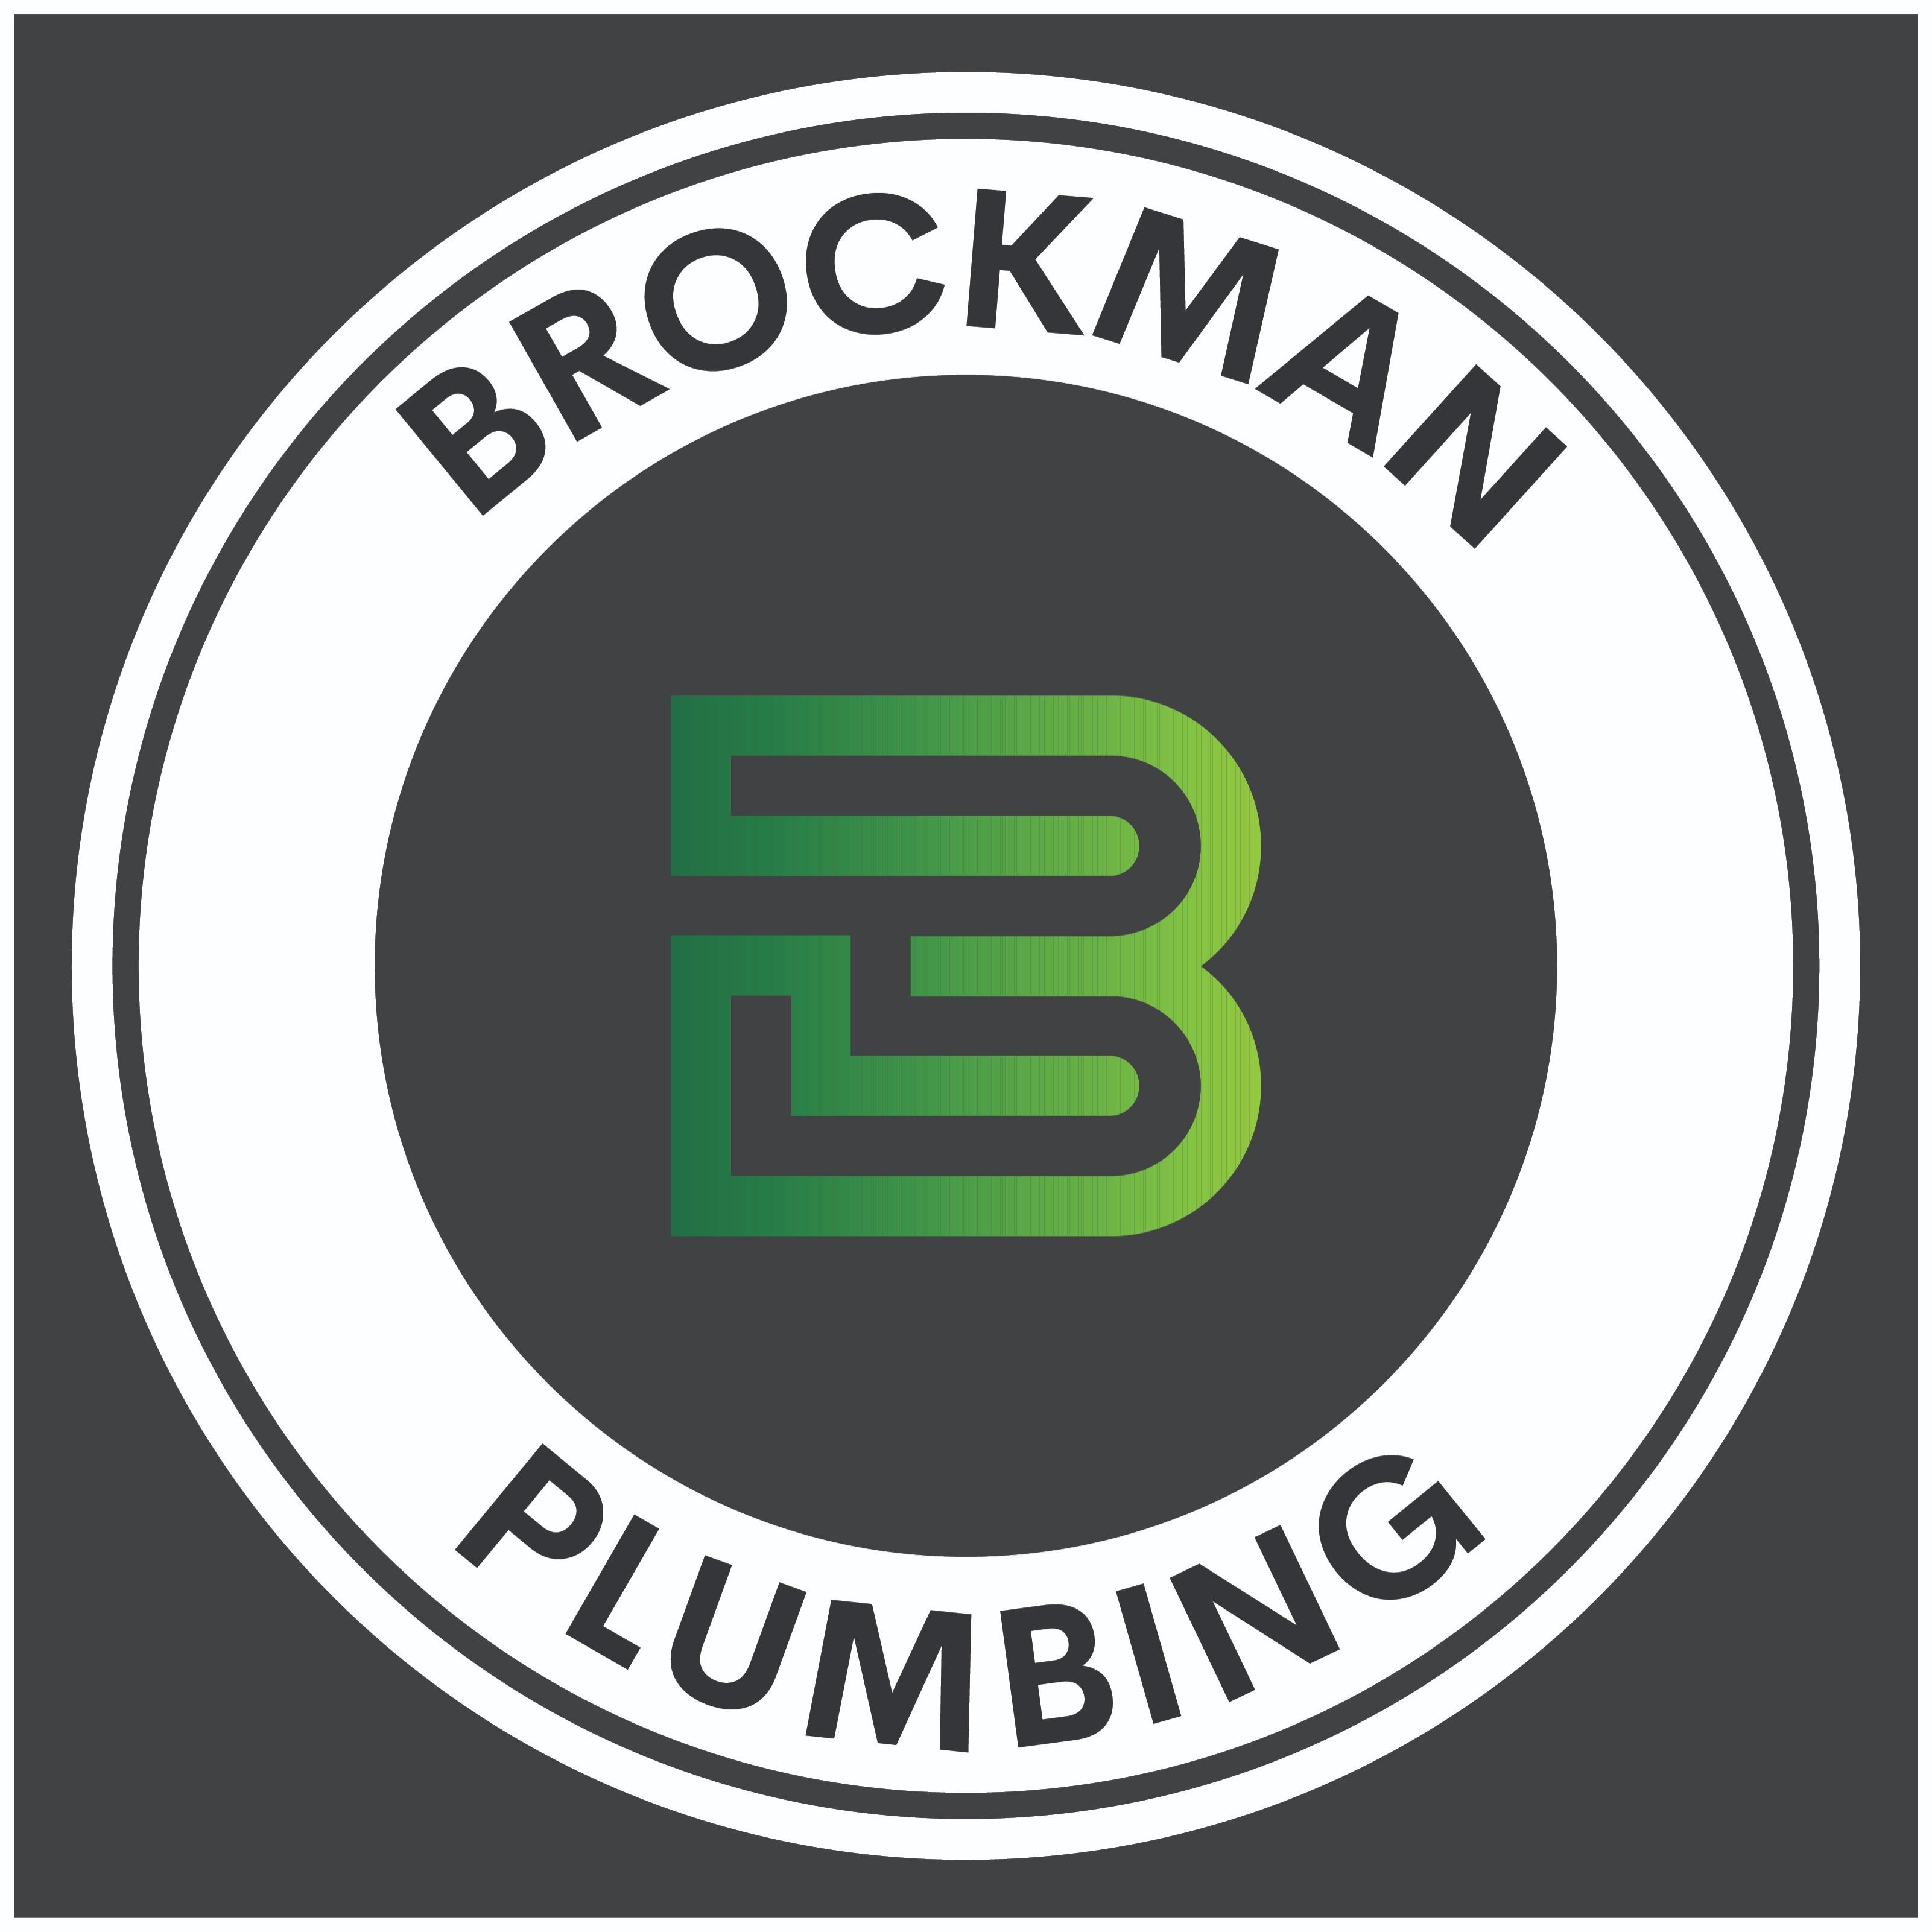 Brockman Plumbing